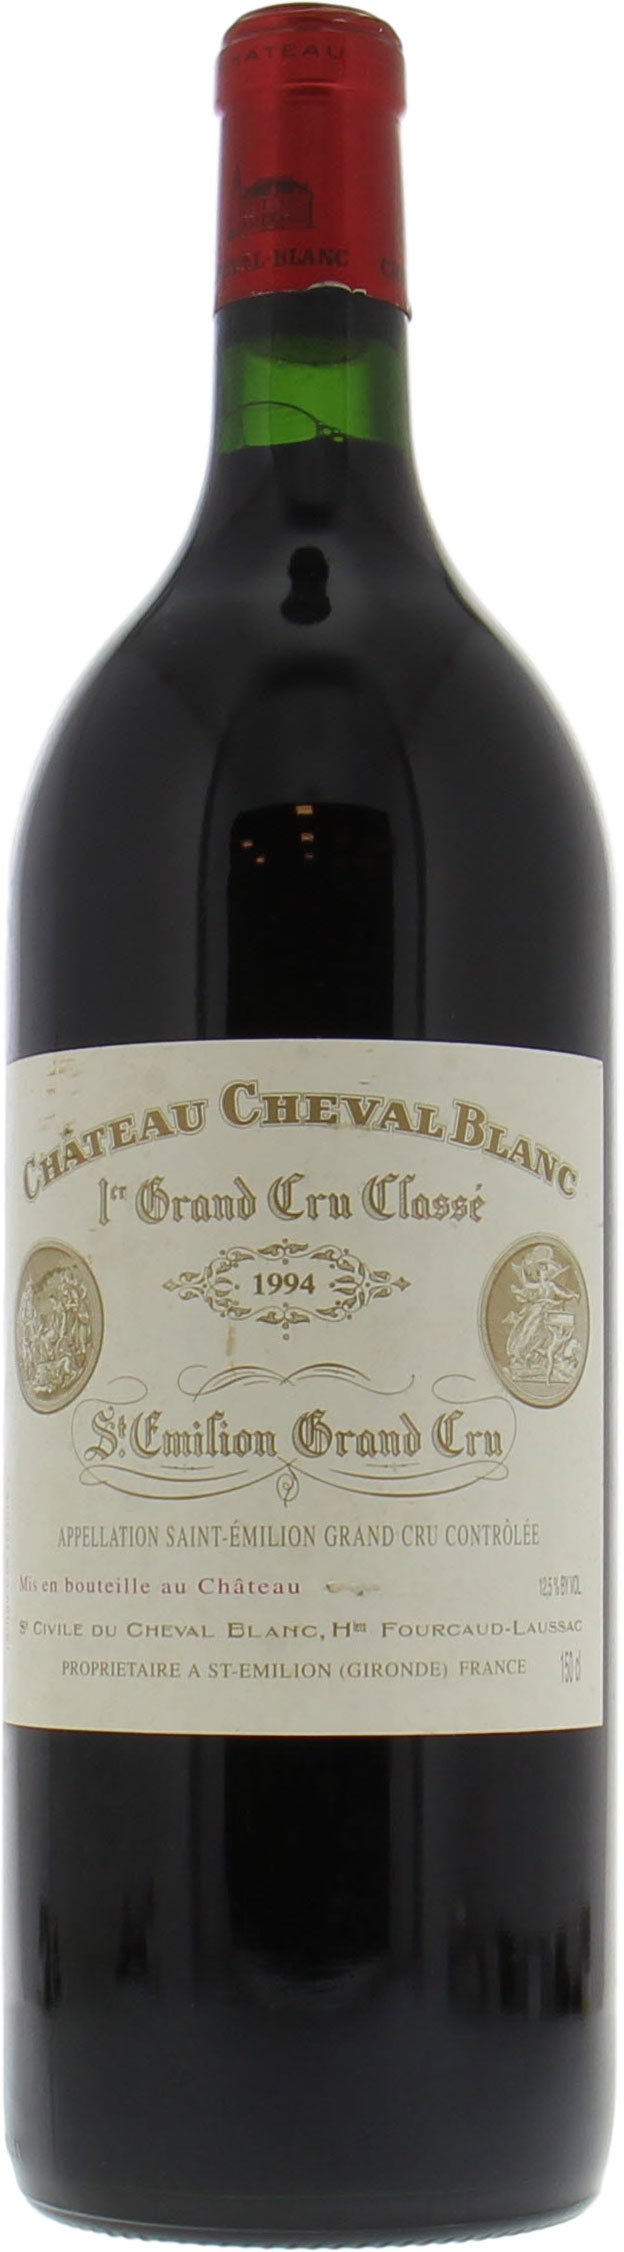 Chateau Cheval Blanc - Chateau Cheval Blanc 1994